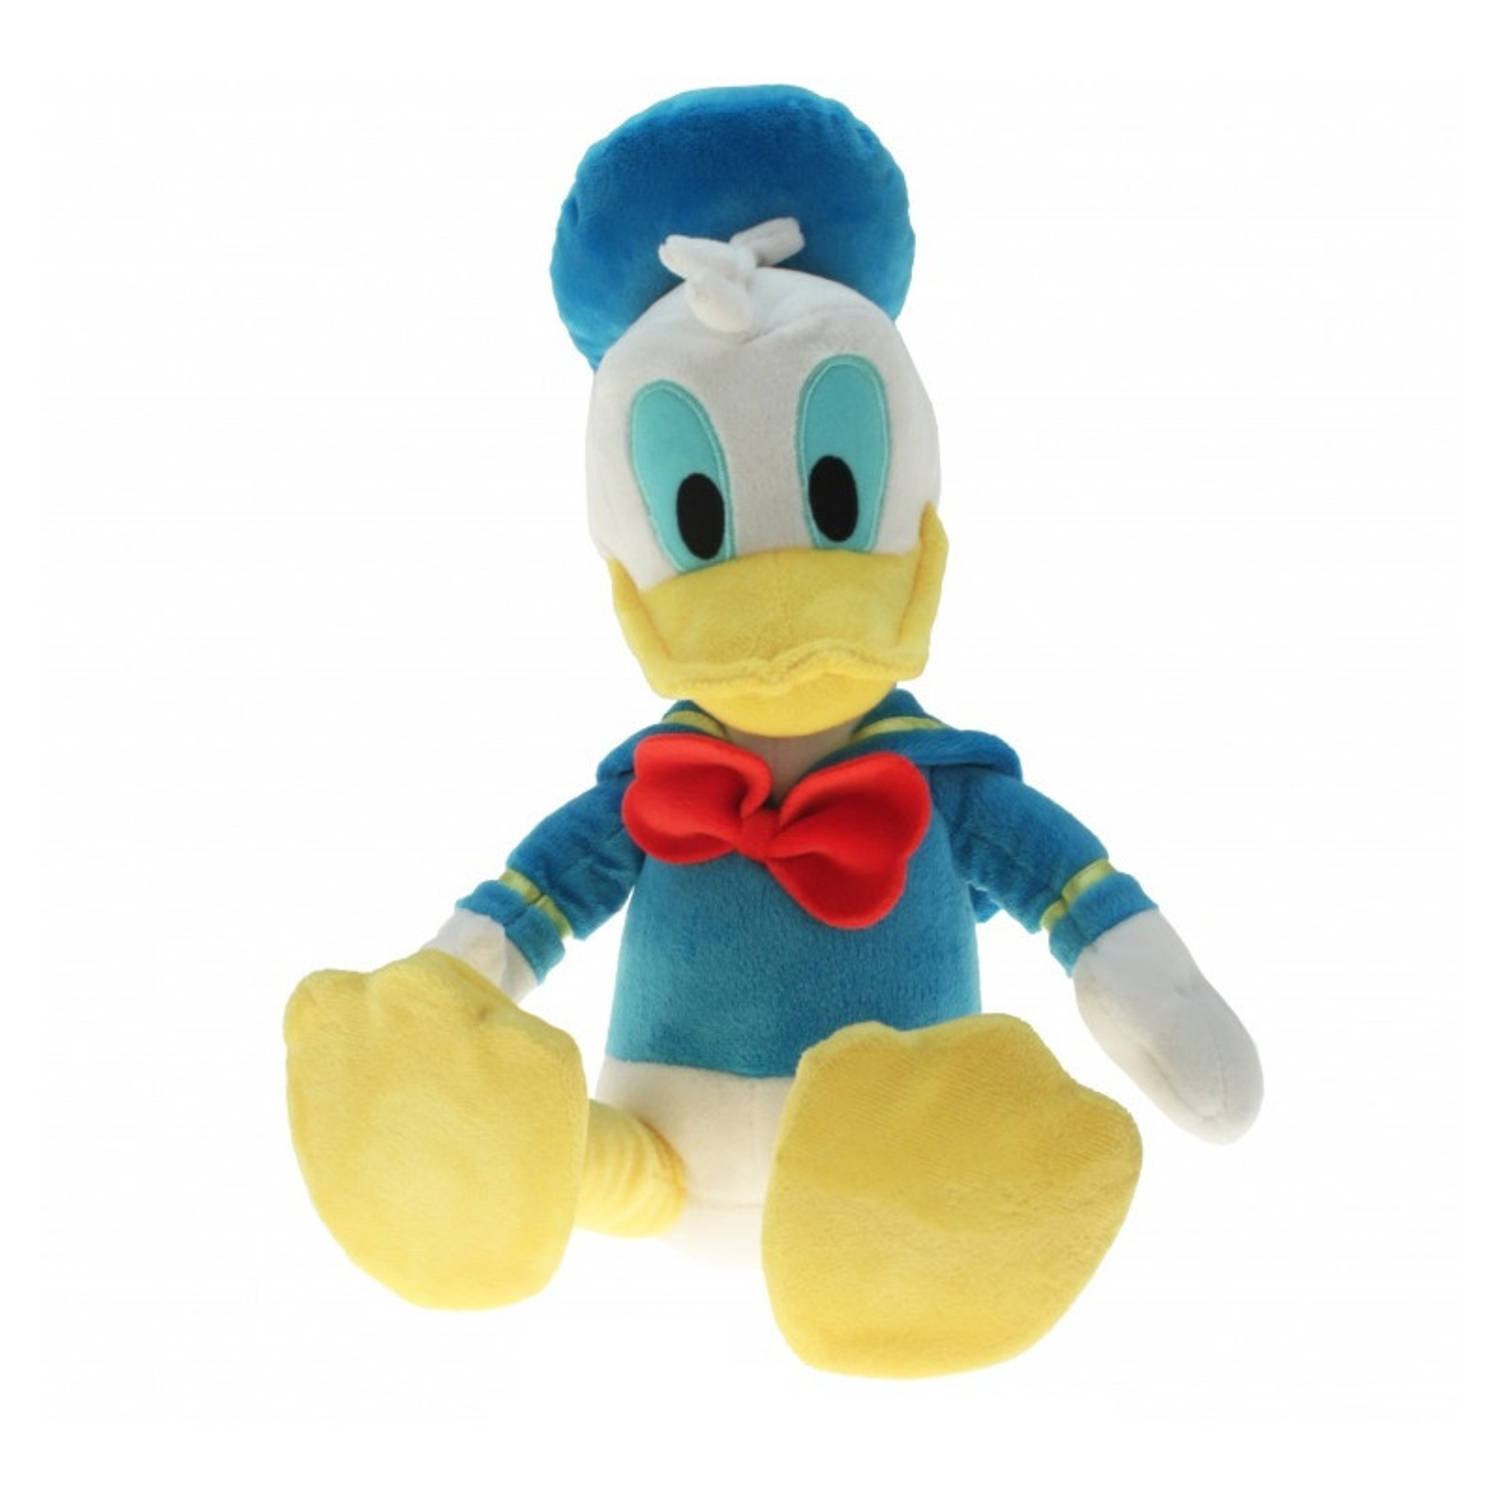 Pluche Disney Donald Duck knuffel 30 cm speelgoed - Eenden cartoon knuffels - Speelgoed voor kinderen